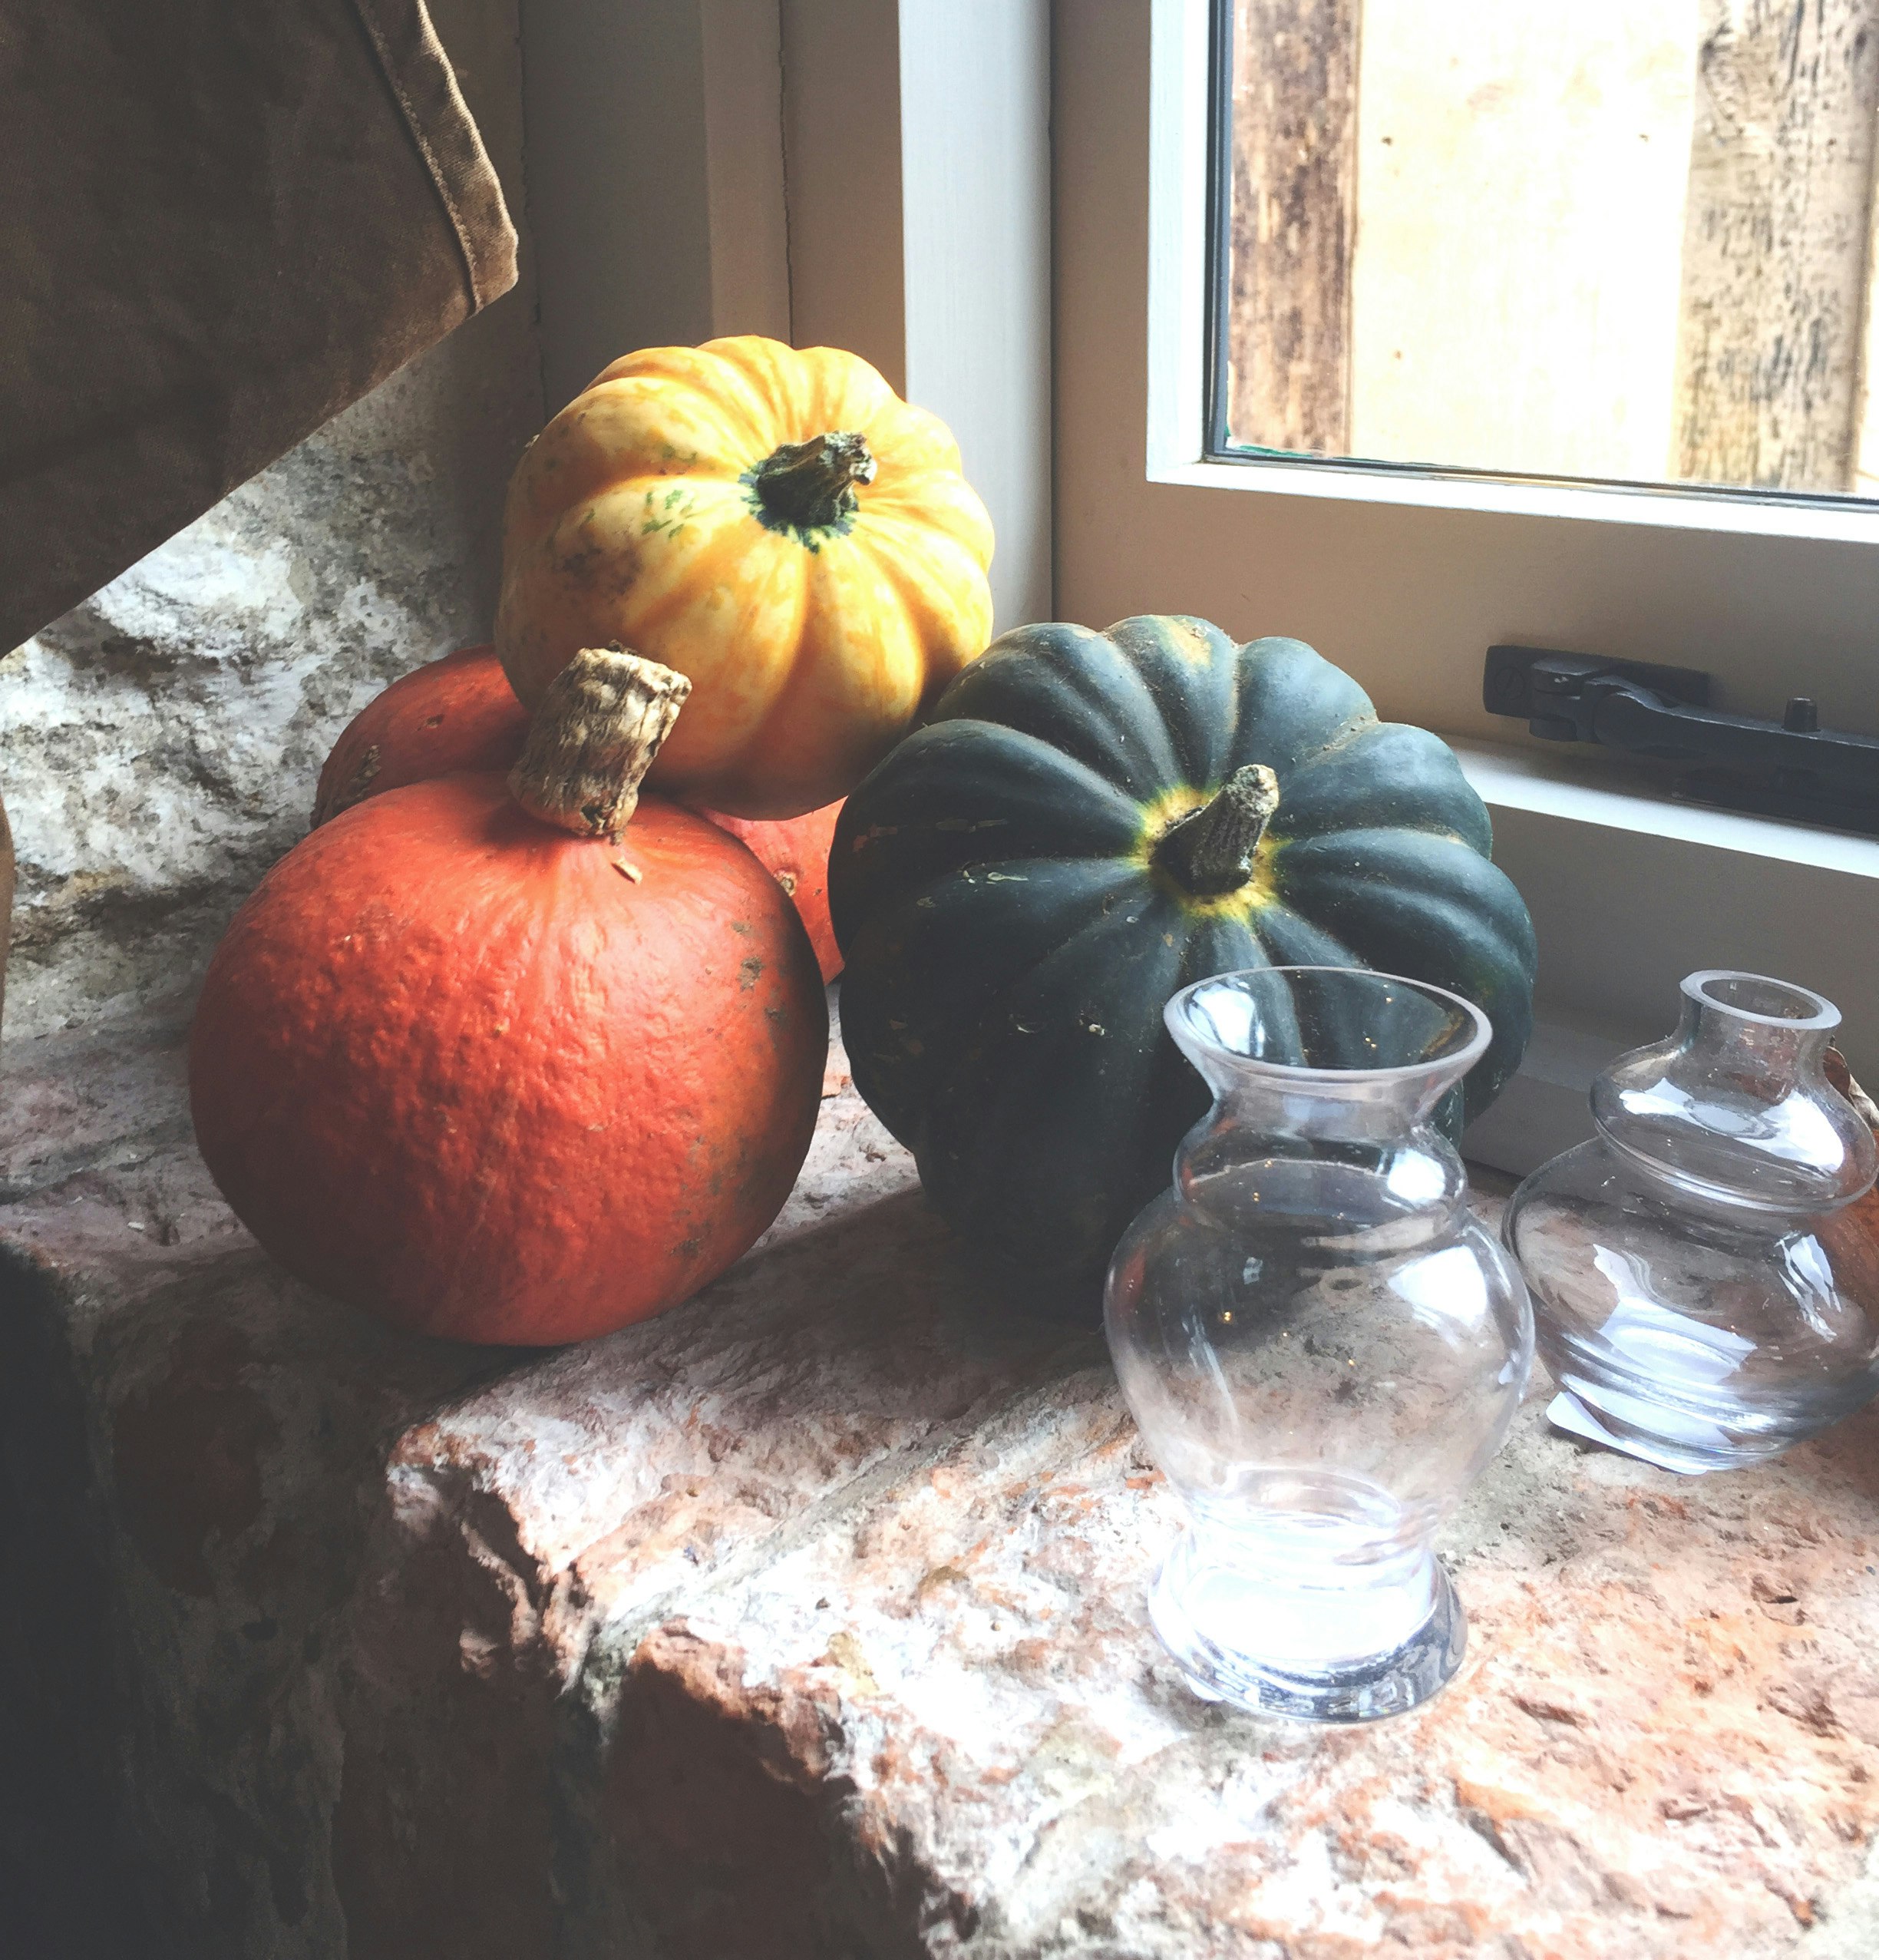 orange pumpkin beside clear glass jar